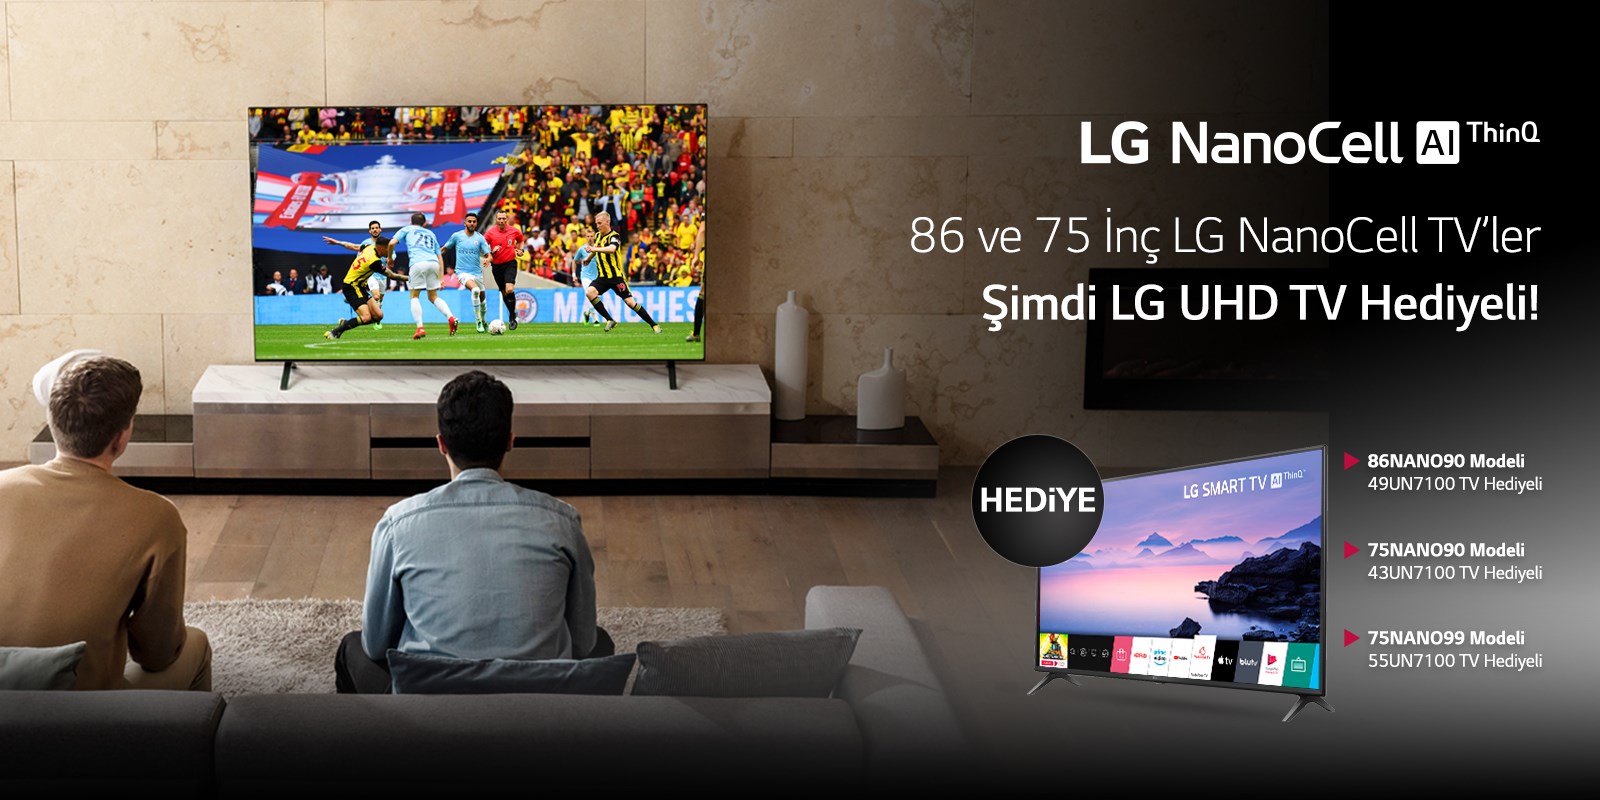 LG NanoCell TV'ler LG UHD TV hediyeli